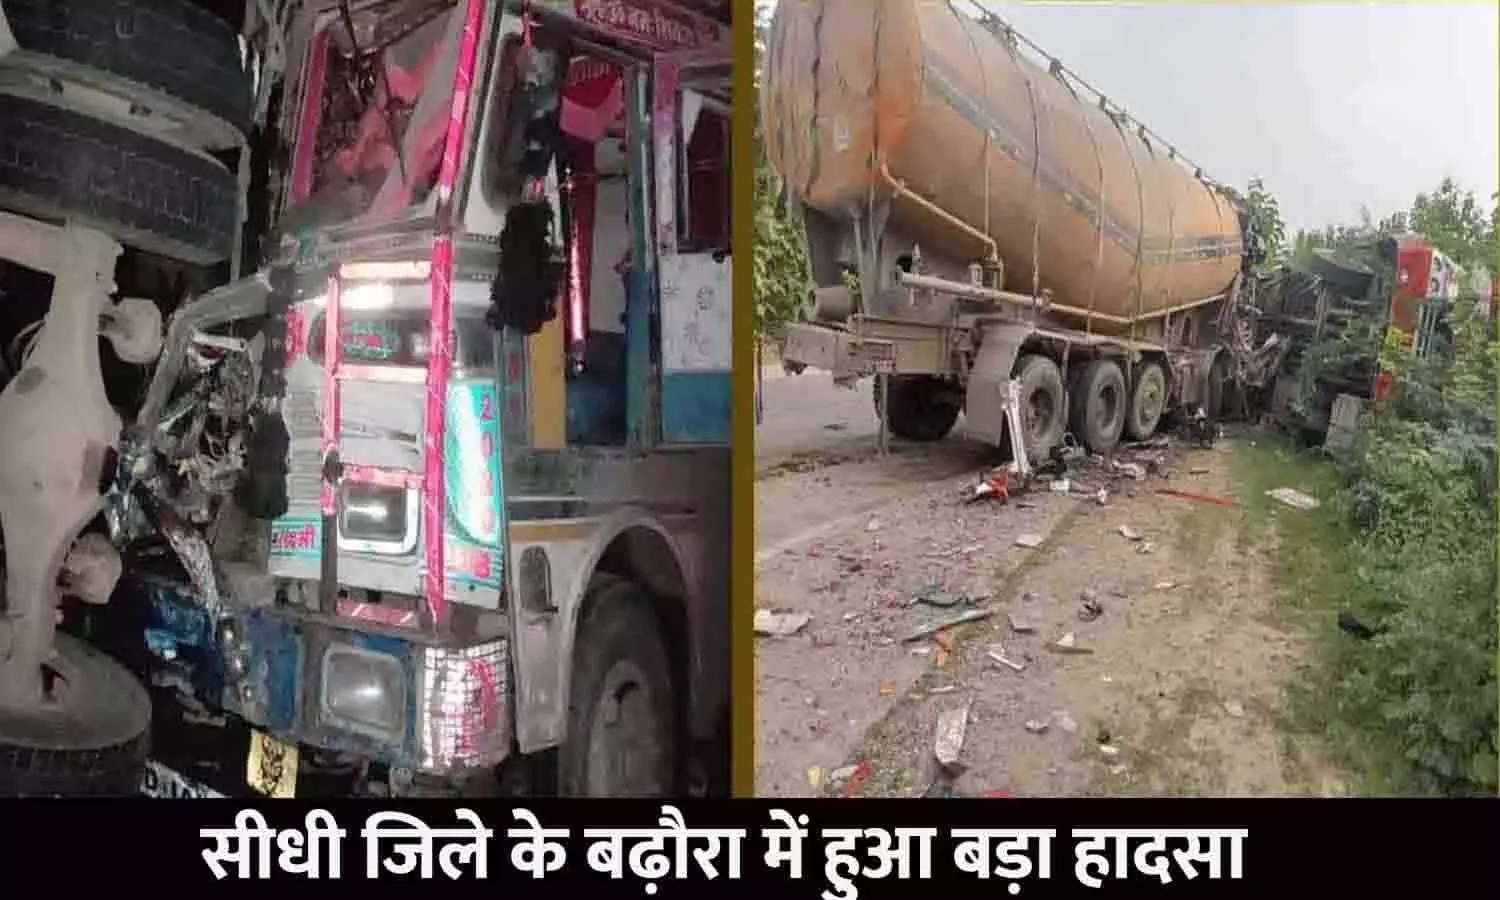 सीधी जिले के बढ़ौरा में हुआ बड़ा हादसा, यात्रियों से भरी बस को बलकर ने मारी टक्कर, 40 से अधिक यात्री घायल